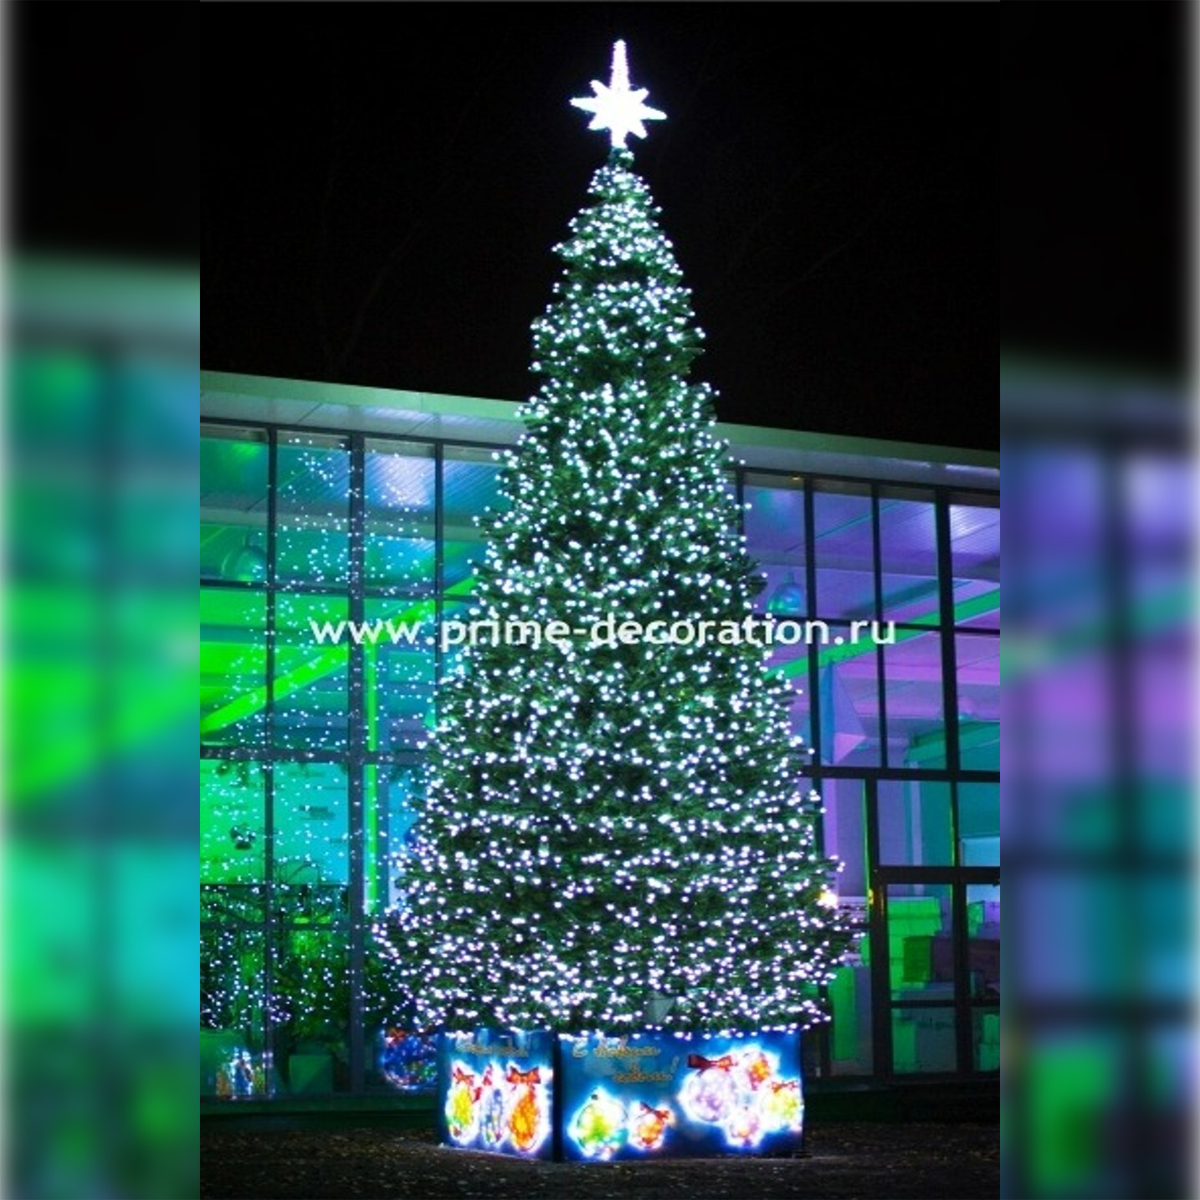 Уральская световая искусственная уличная елка